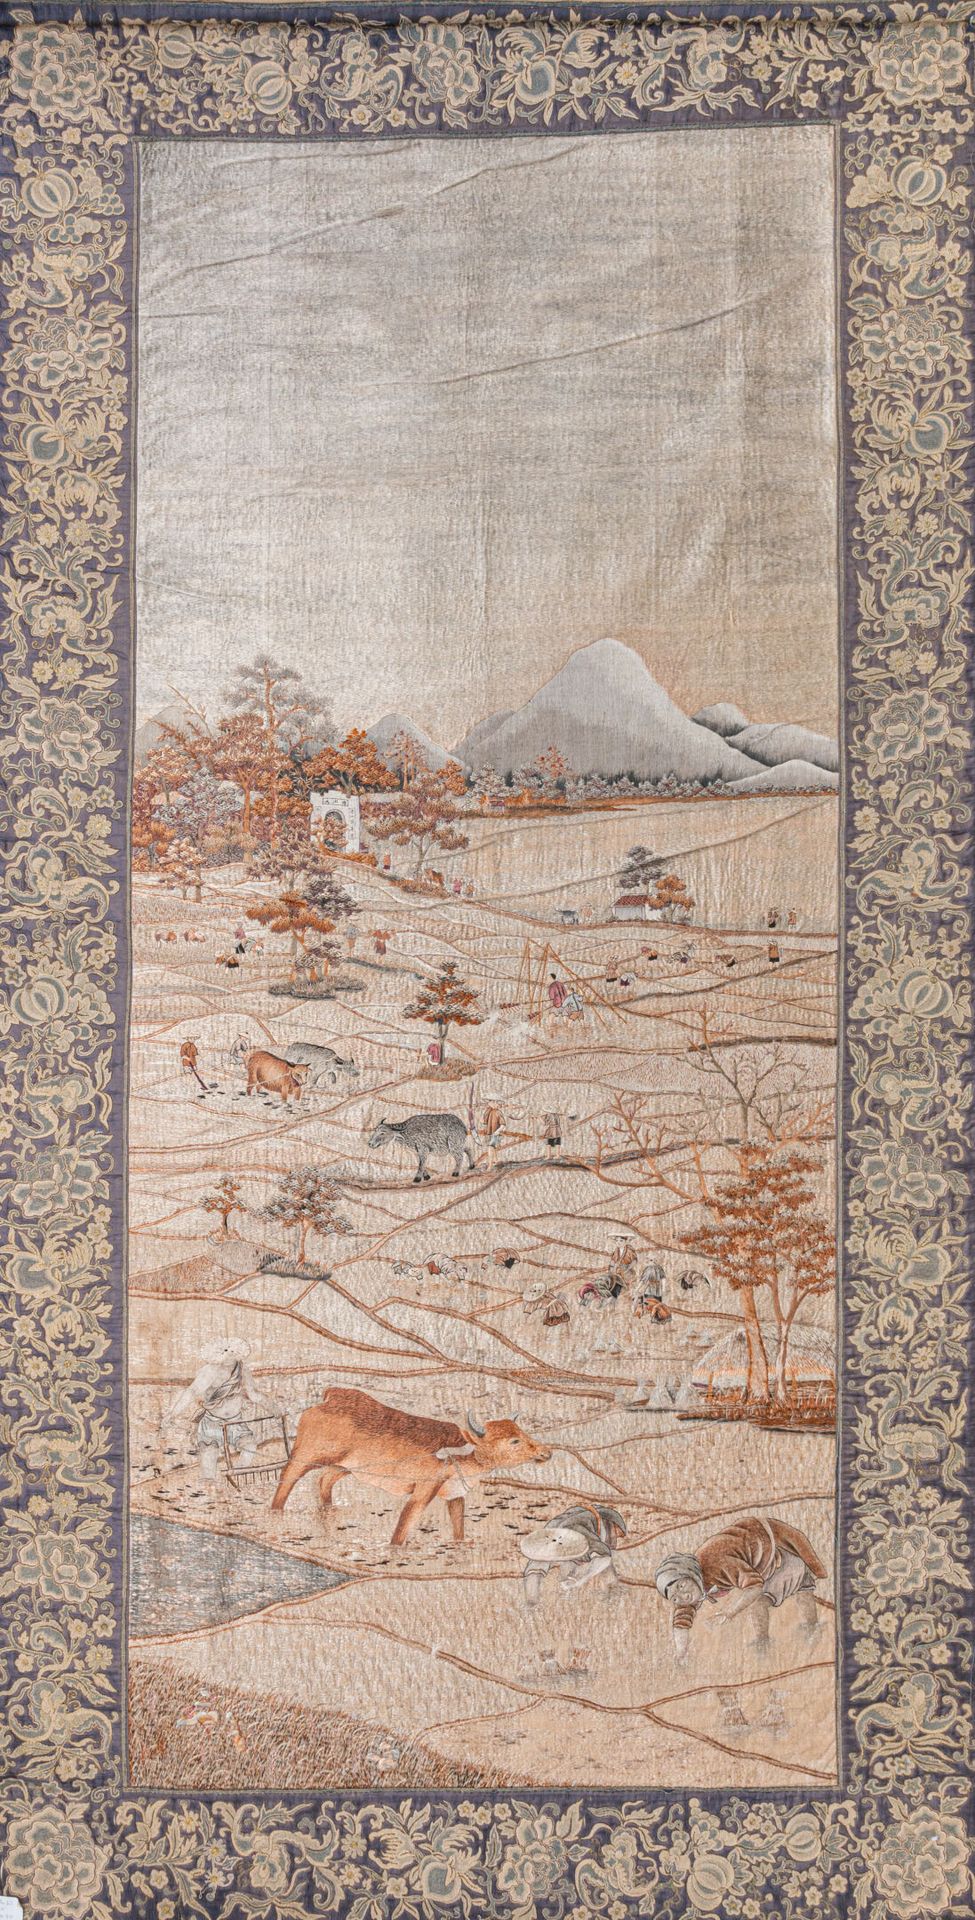 Null 大型刺绣丝绸挂件，印度支那/越南，20 世纪早期
作品以灰色和棕色为主色调，描绘了一幅大型风景画，画中有在水牛的帮助下在稻田里劳作的男女，左侧是一个石&hellip;